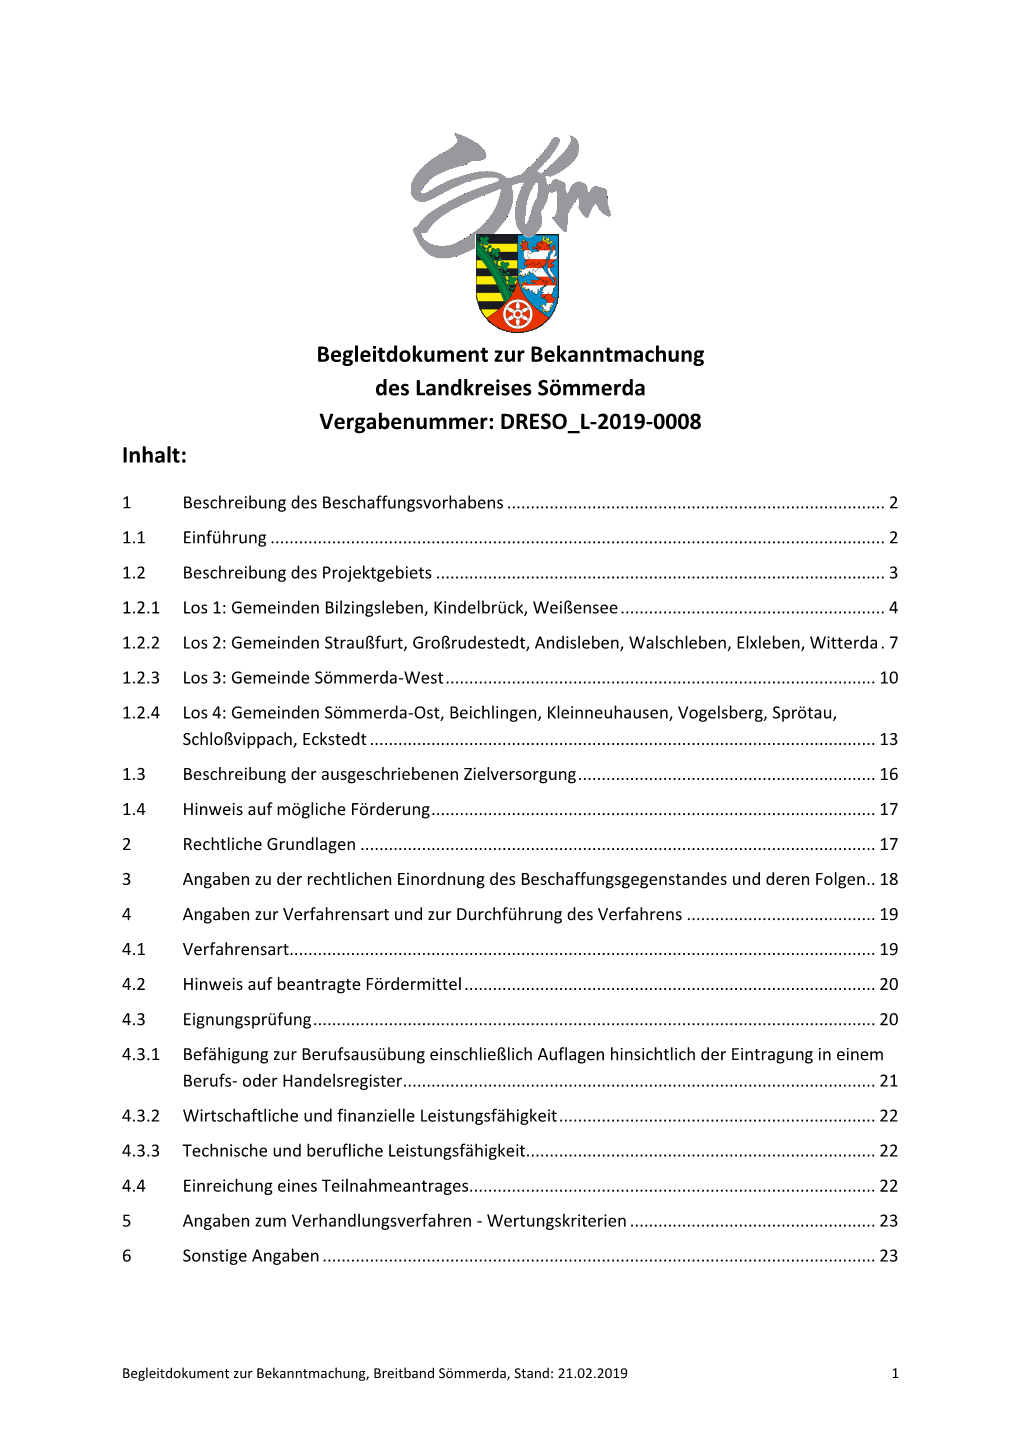 Begleitdokument Zur Bekanntmachung Des Landkreises Sömmerda Vergabenummer: DRESO L-2019-0008 Inhalt